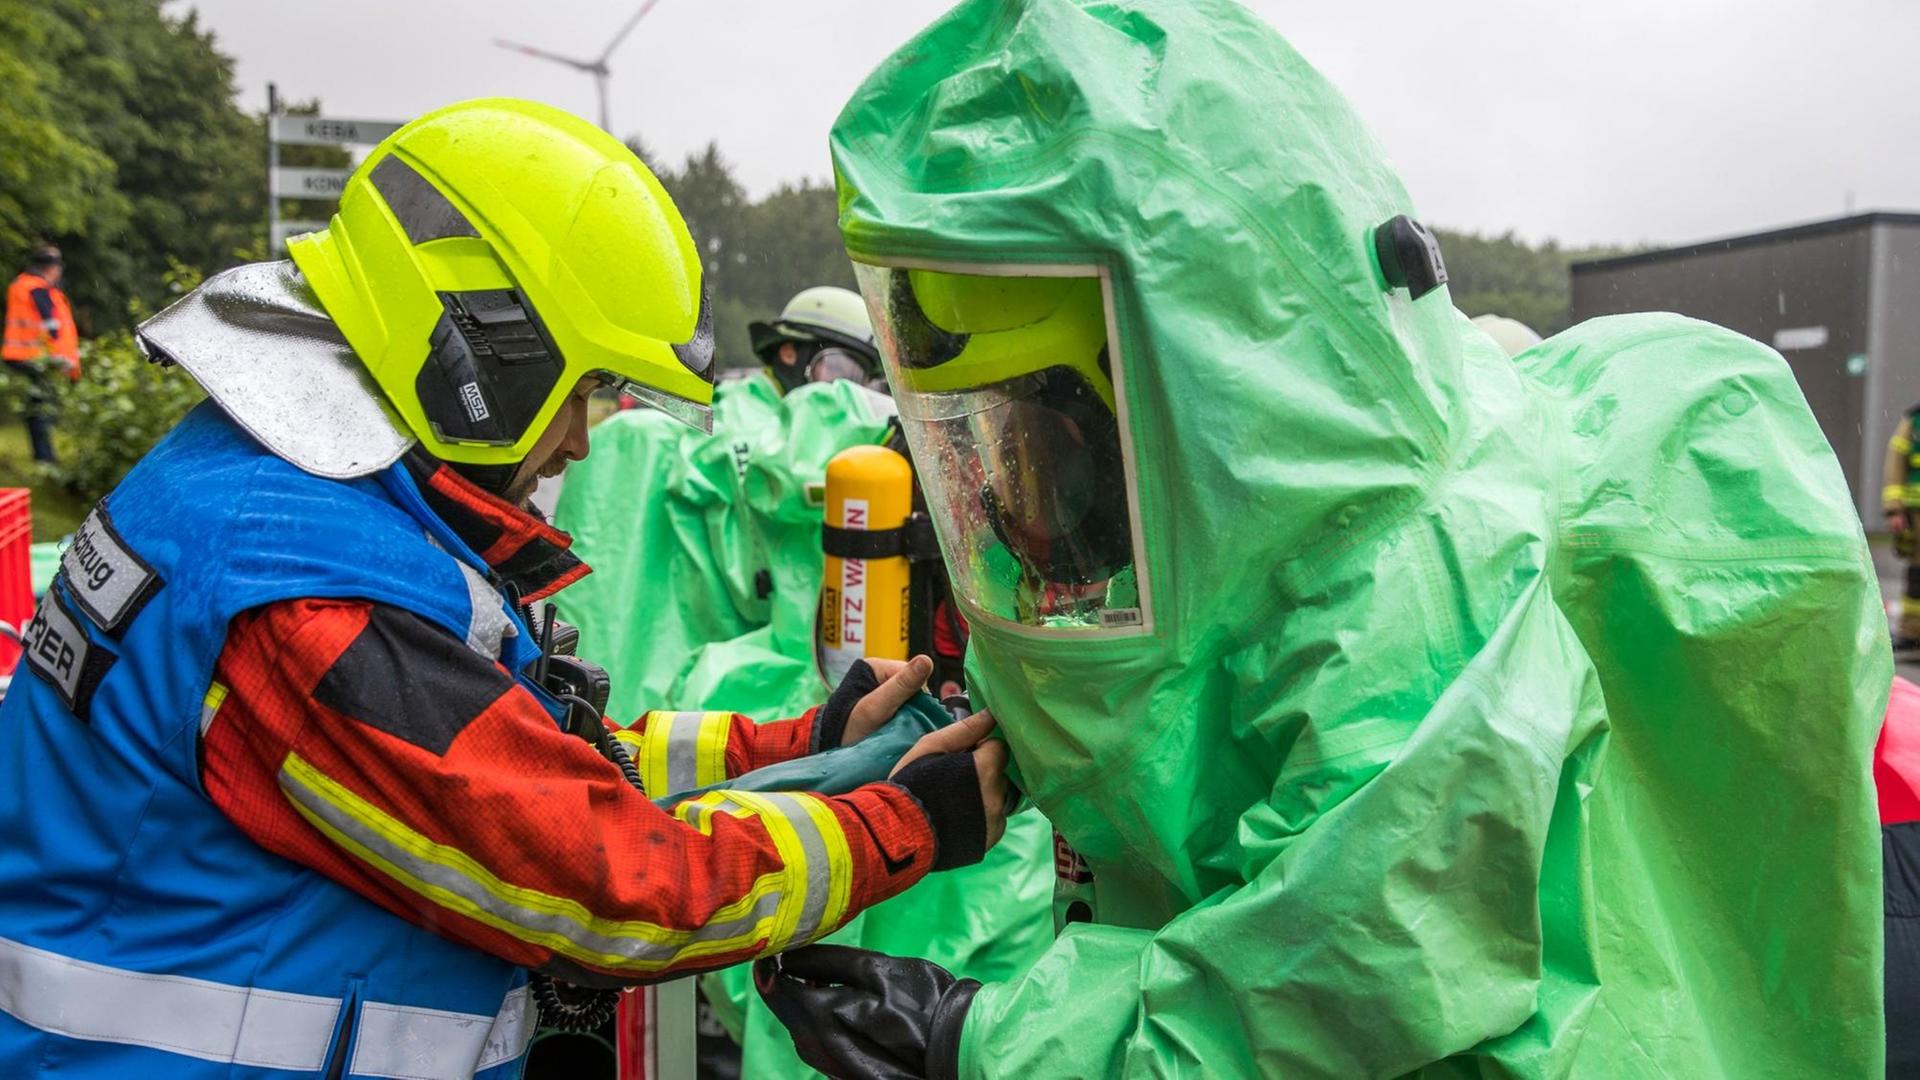 Feuerwehrleute üben für den Notfall auf der Deponie Ihlenberg nach einem angenommenen Chemieunfall. 01.07.2017, Mecklenburg-Vorpommern, Schönberg.